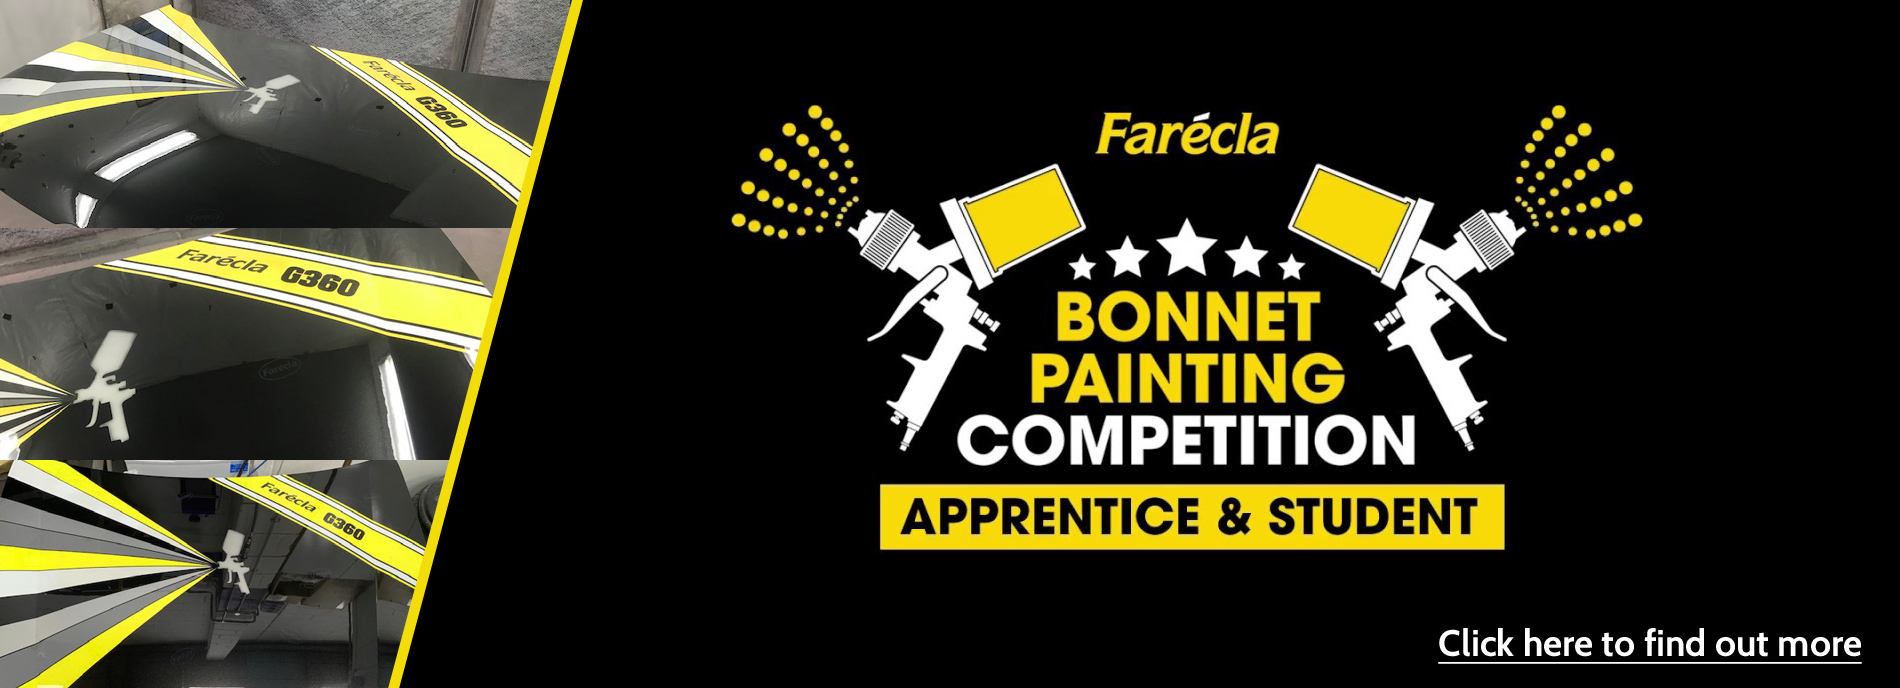 Farécla Apprentice & Student Bonnet Painting Competition 2019